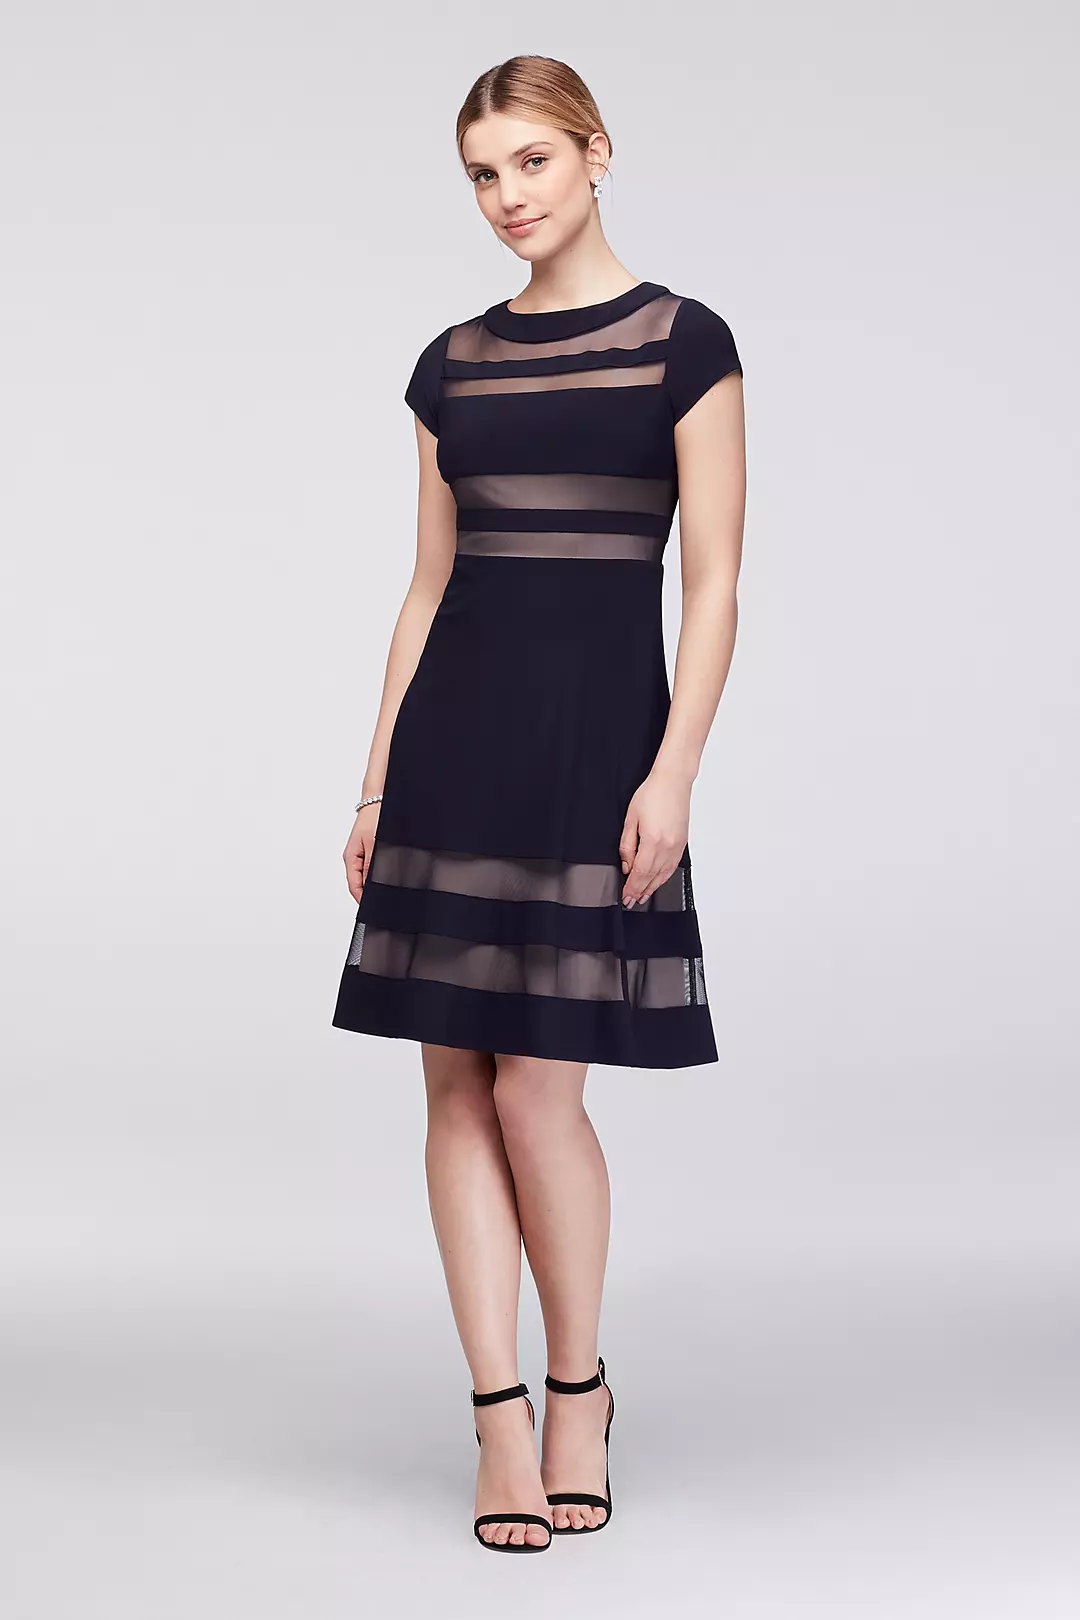 Faux-Illusion Stripe A-Line Short Dress Image 1